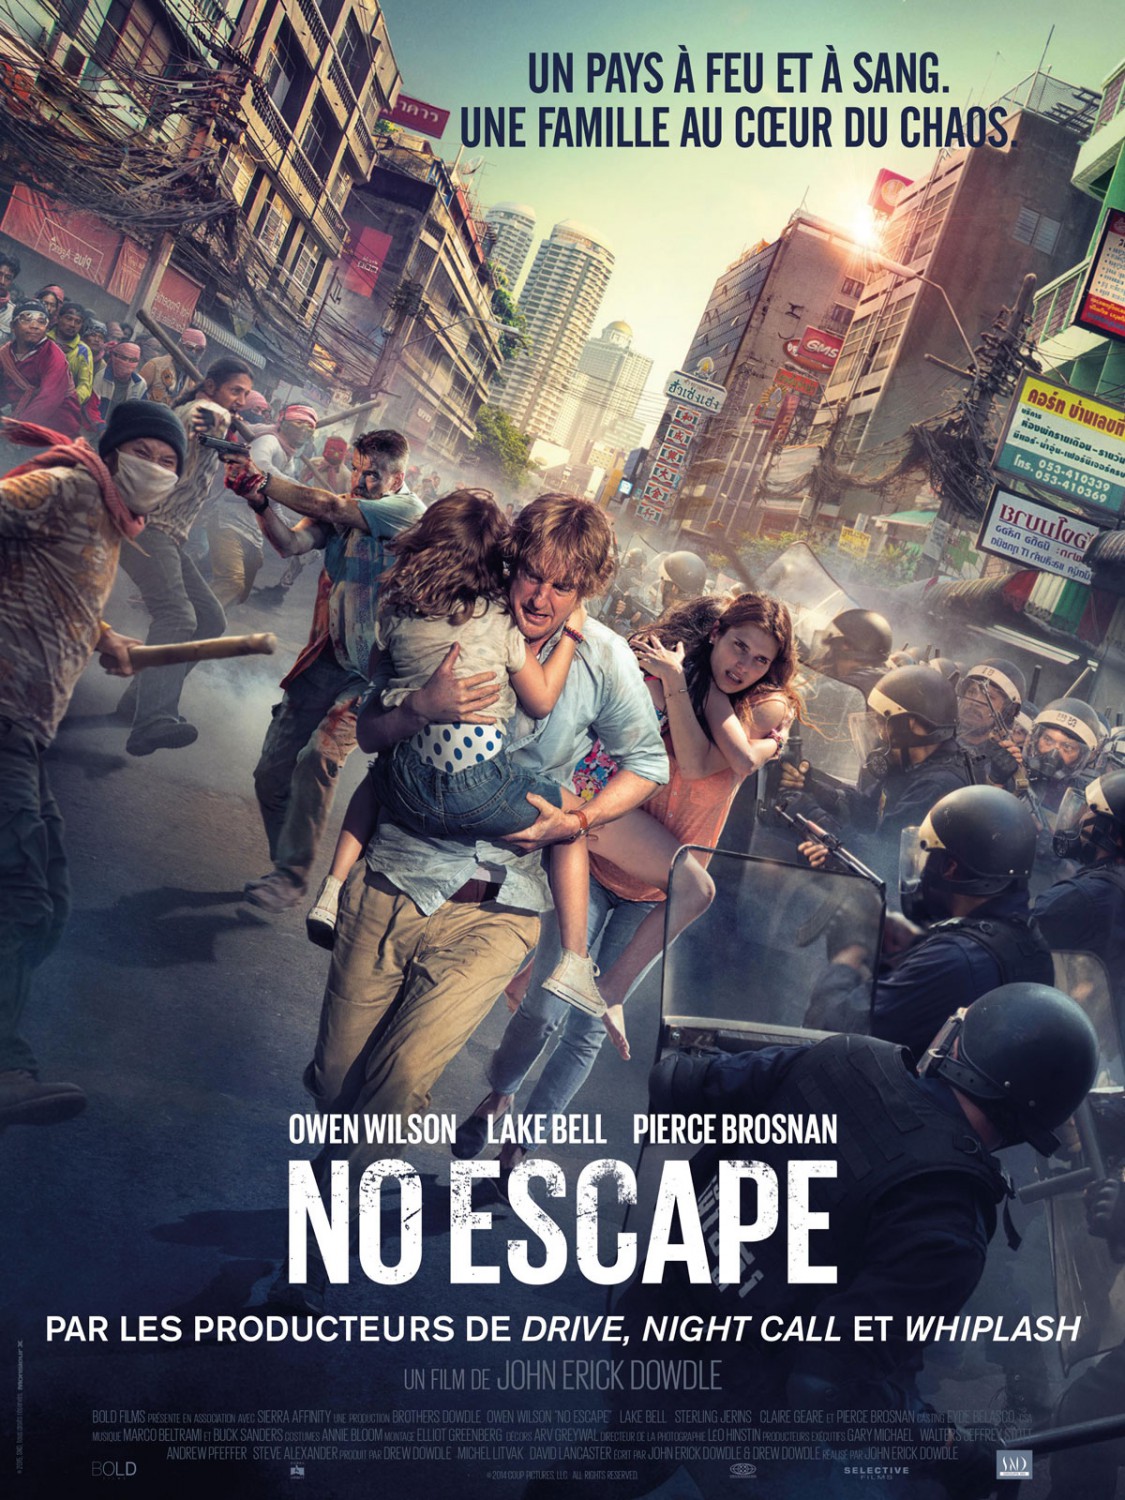 NO ESCAPE-Poster International-29Julho2015